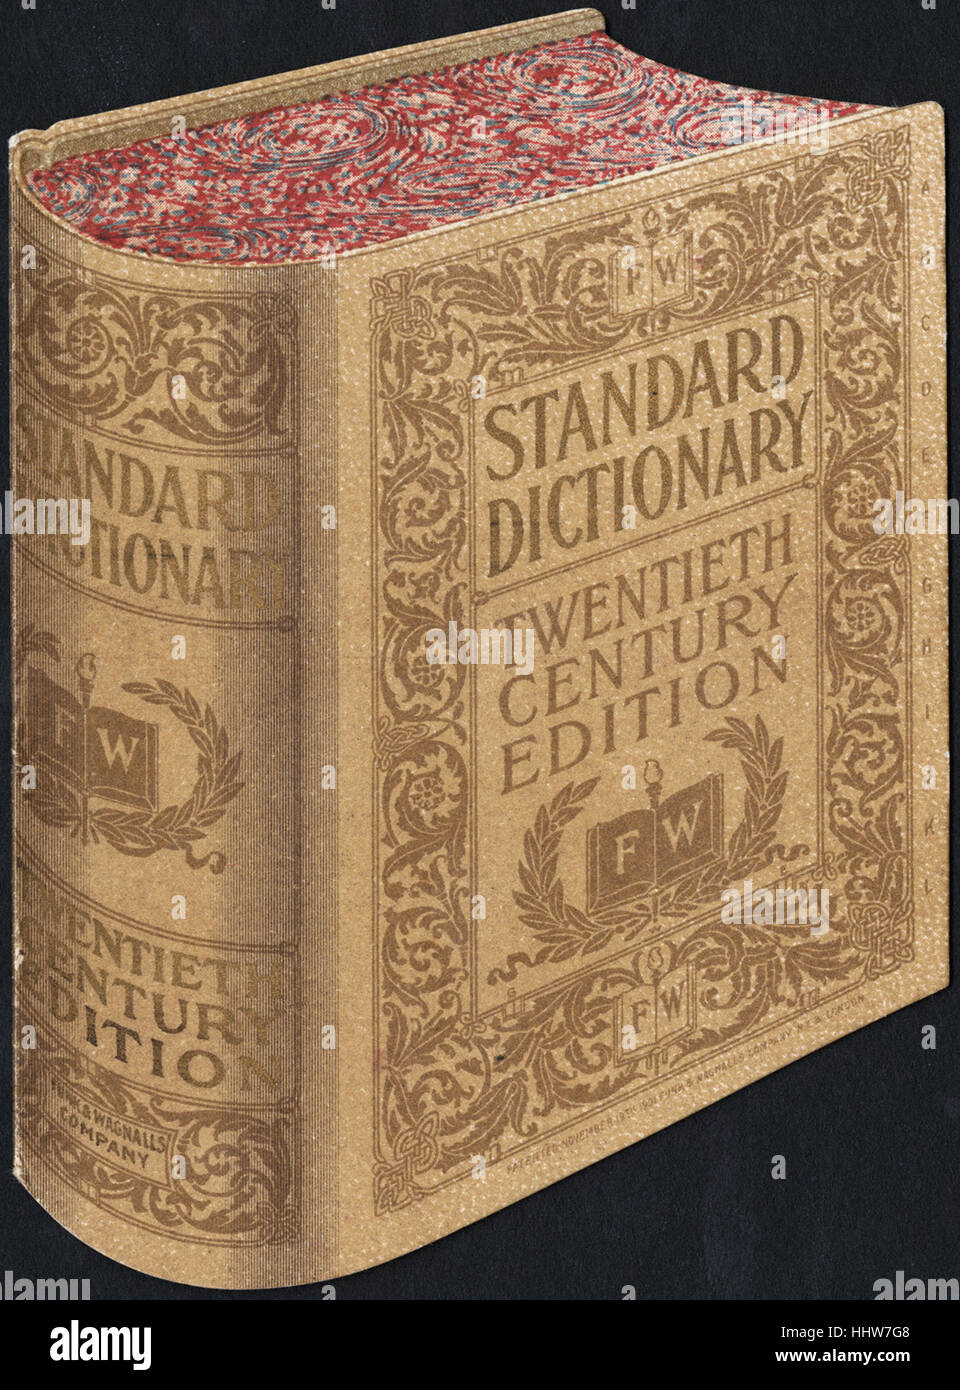 Standardwörterbuch, Ausgabe des zwanzigsten Jahrhunderts. [Personal] - Freizeit, Lesung und Travel Trade Cards Stockfoto